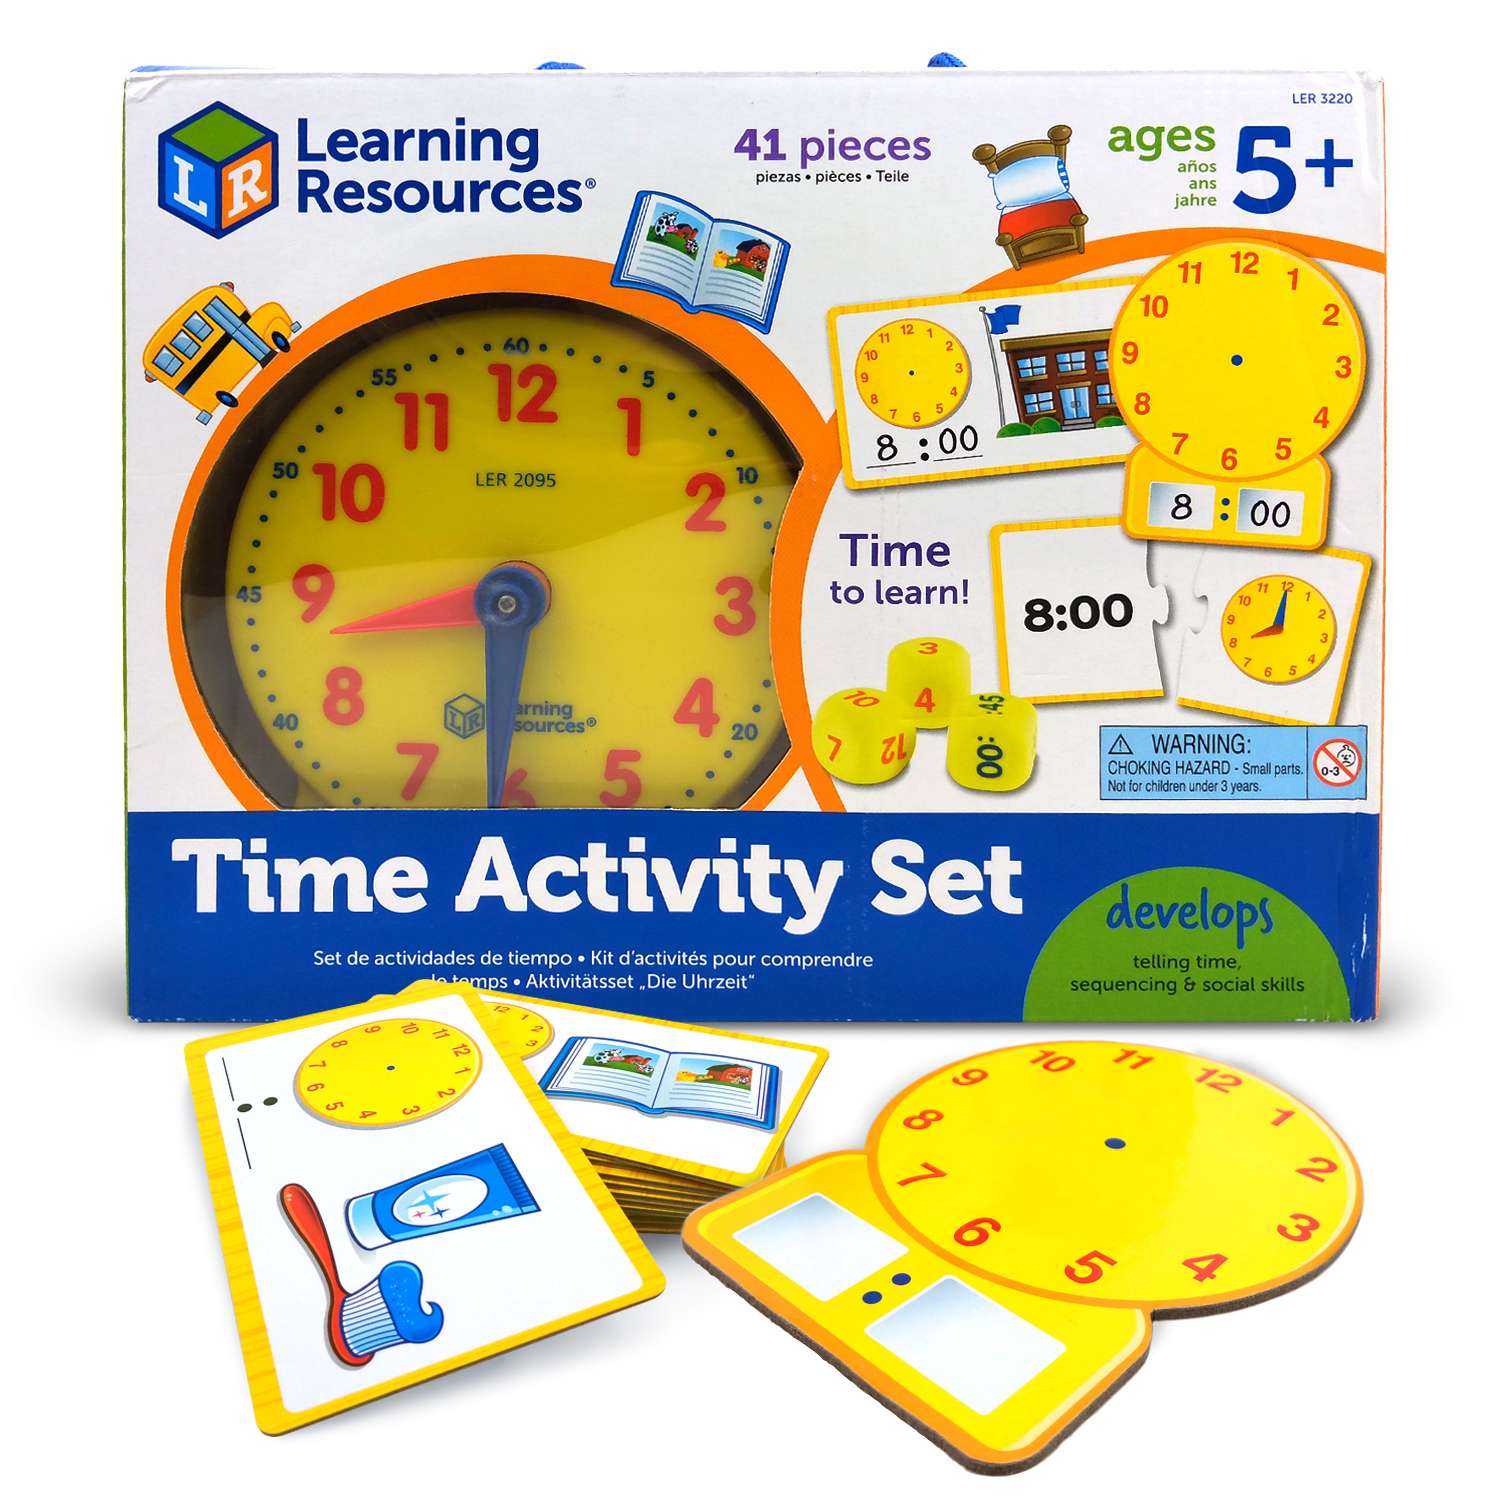 Ler3220 развивающая игрушка "Учимся определять время" (41 элемент). Учим часы игра. Набор время Learning resources. Часы Учимся определять время Learning resources, диаметр 30 см. Игра обучение времени